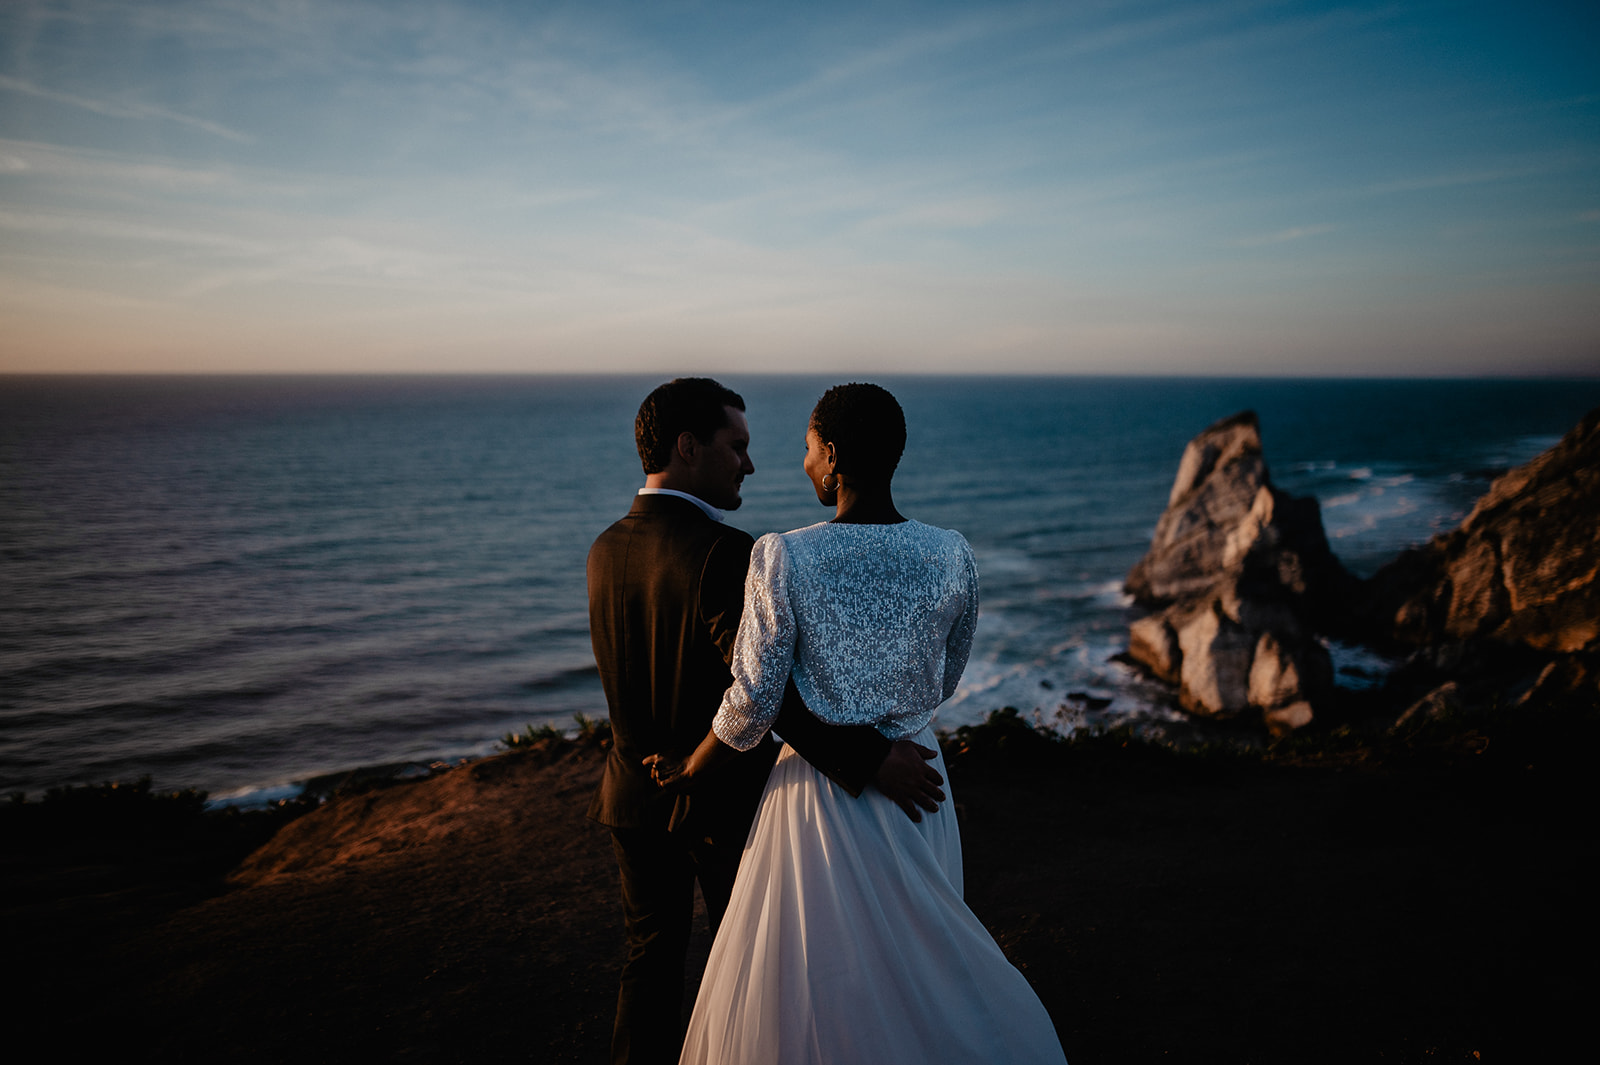 Romantische Stimmung Hochzeitspaar mit Blick auf das weite Meer.